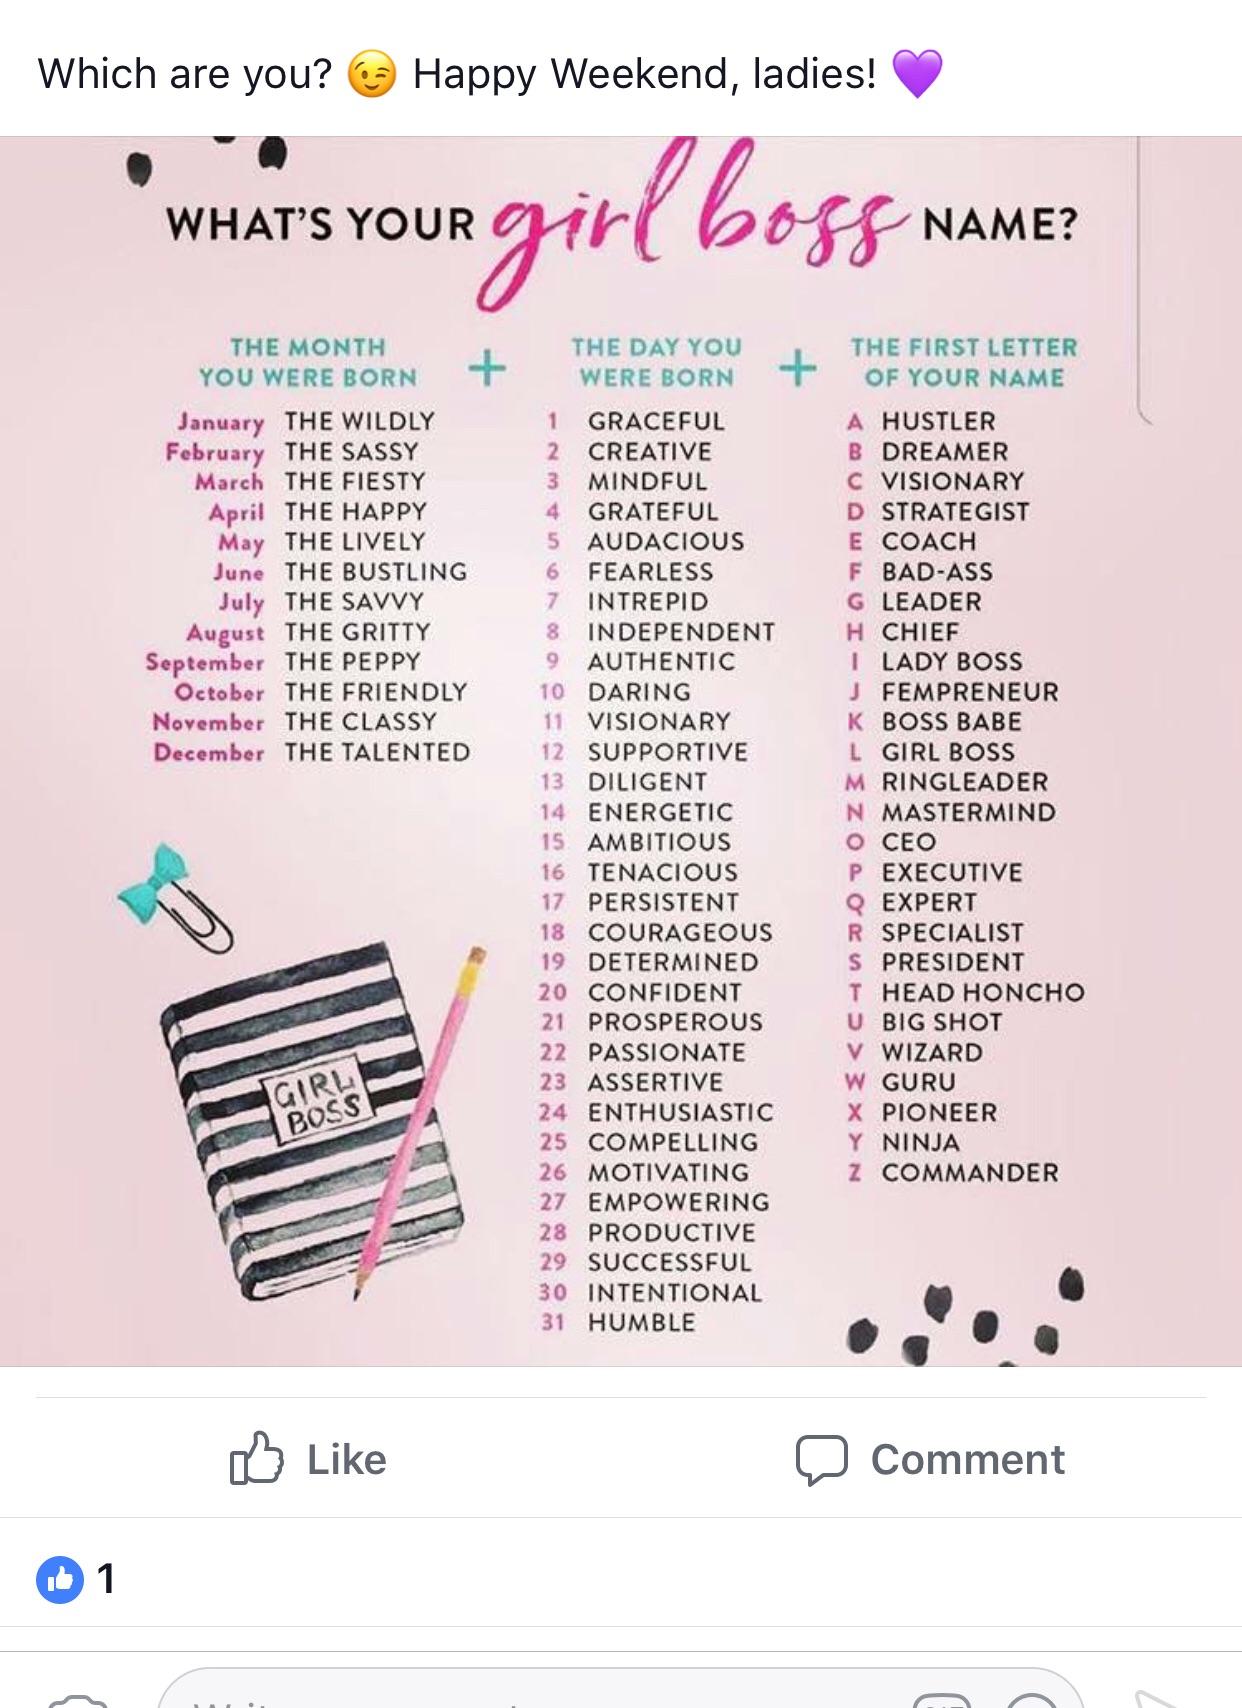 Gi-Gi reccomend Hustler girls names